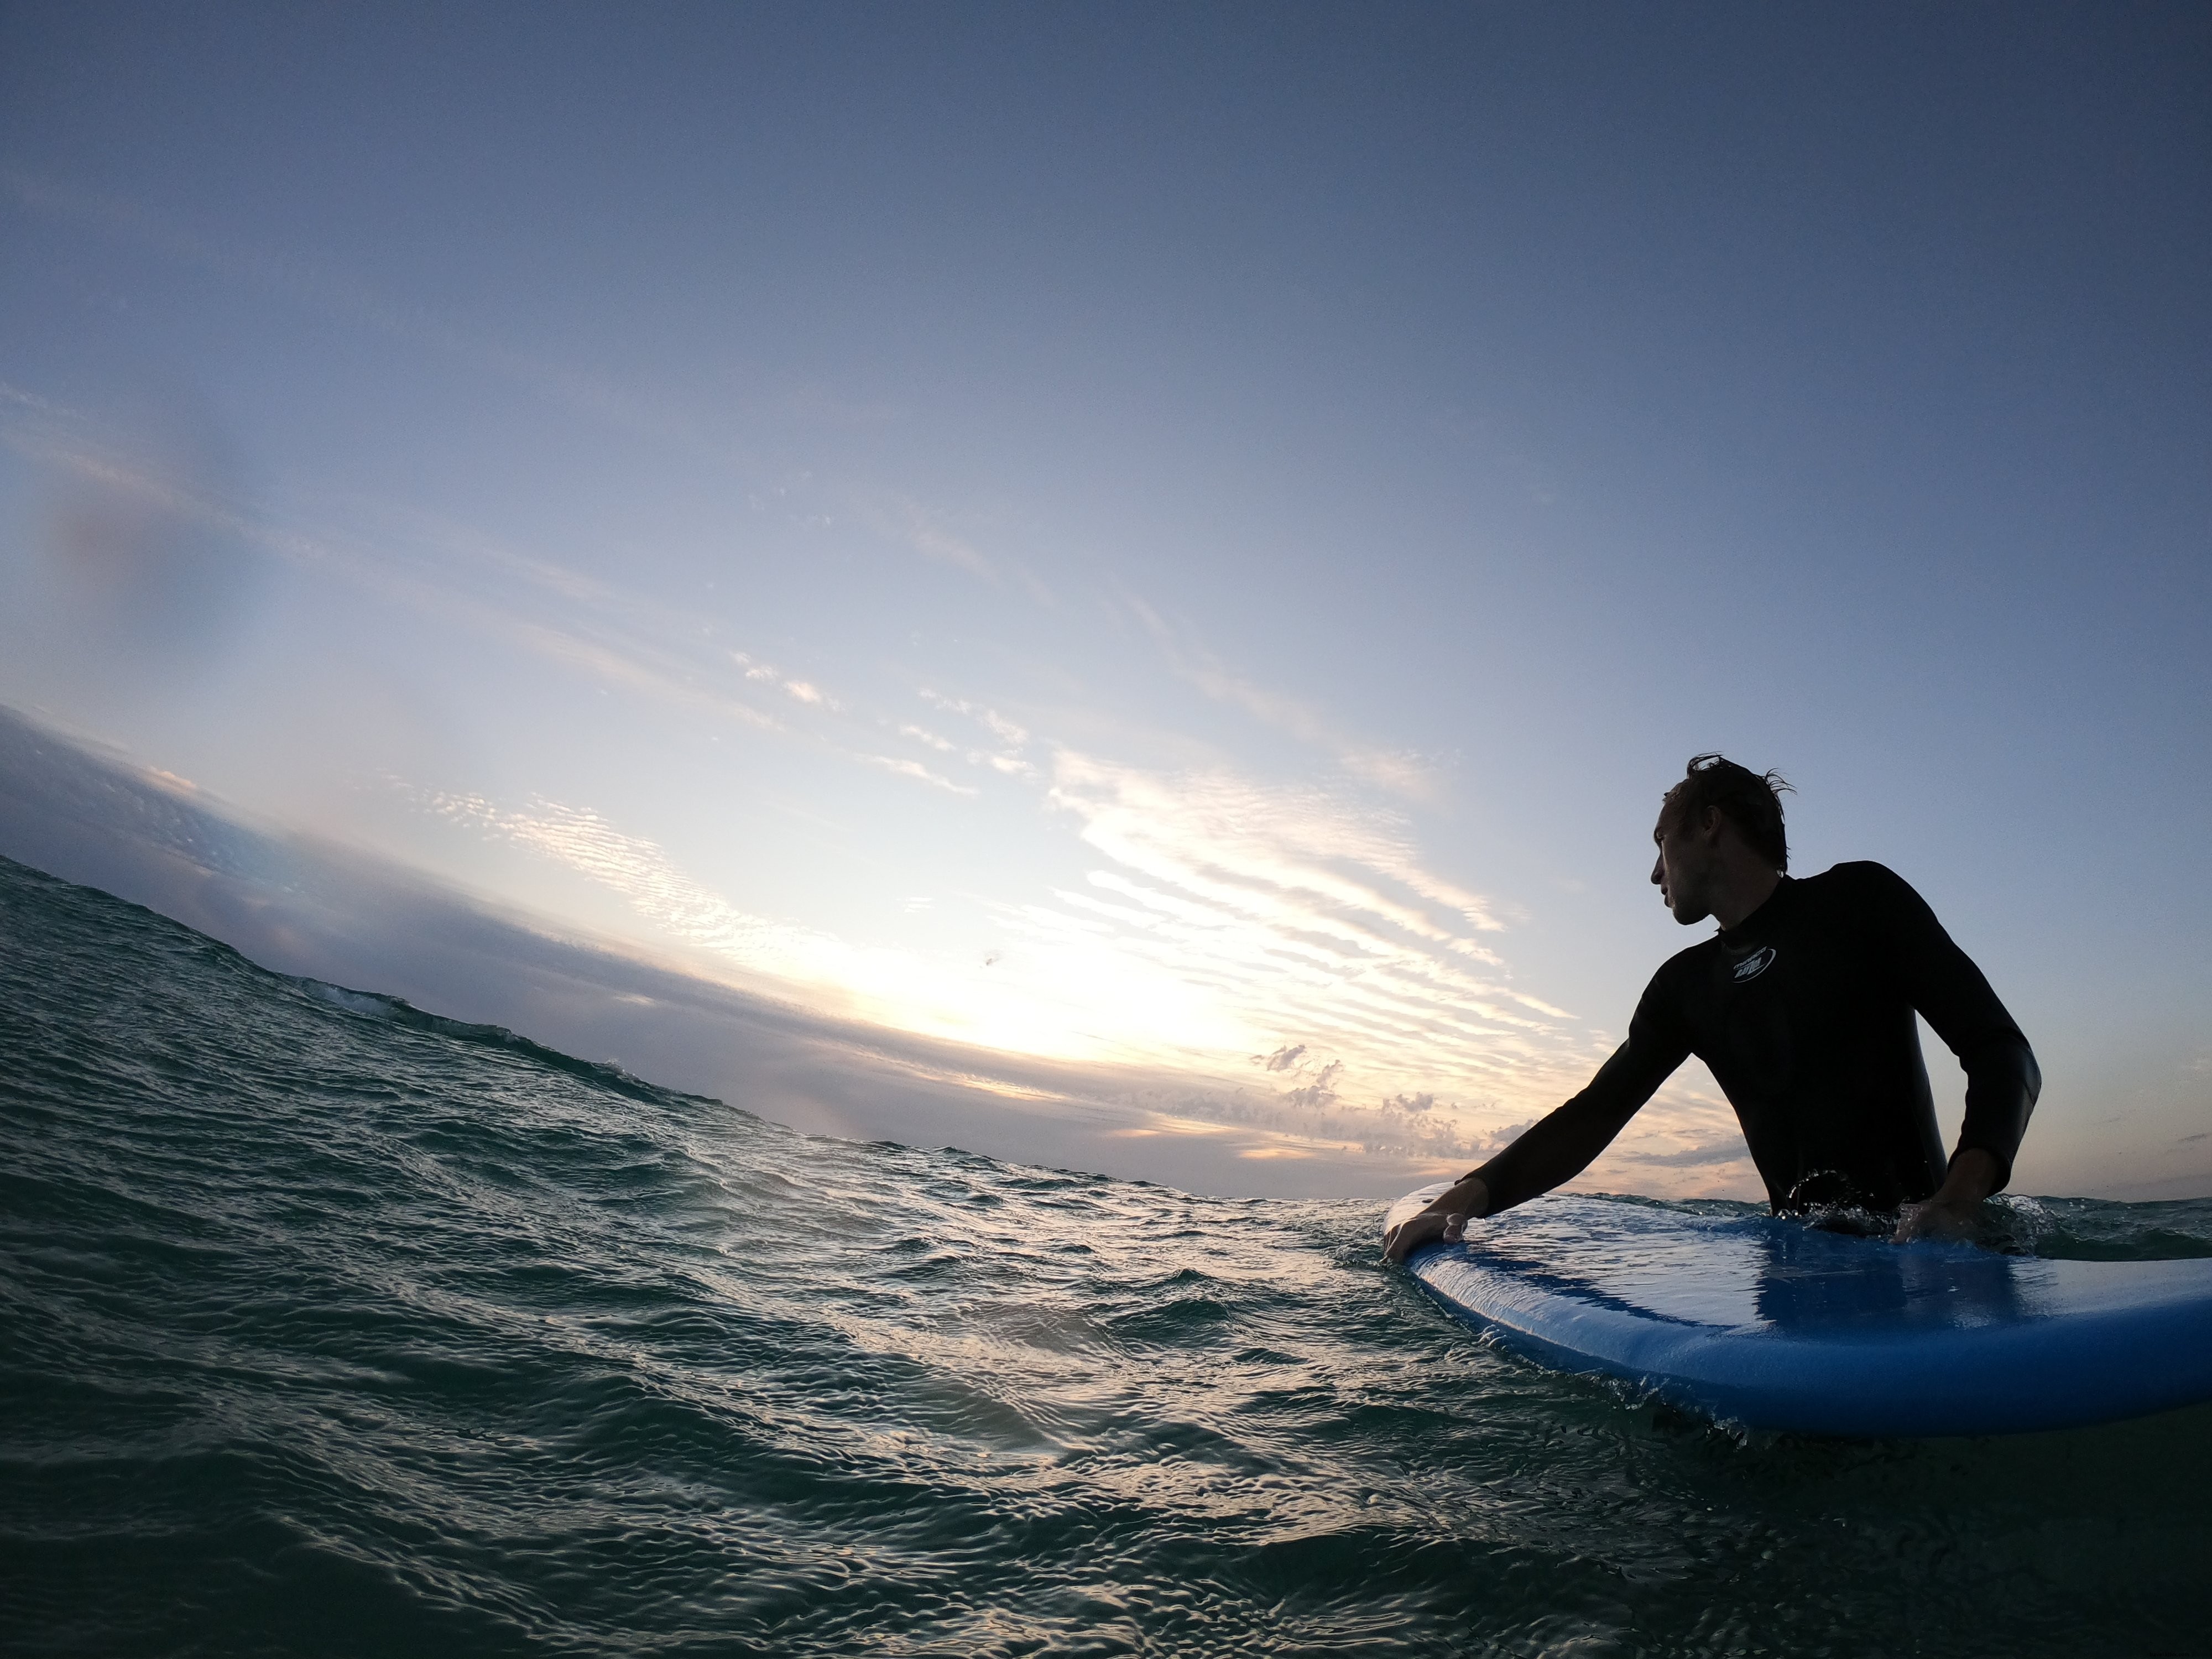 Persona in piedi nell acqua ondulata con in mano una tavola da surf